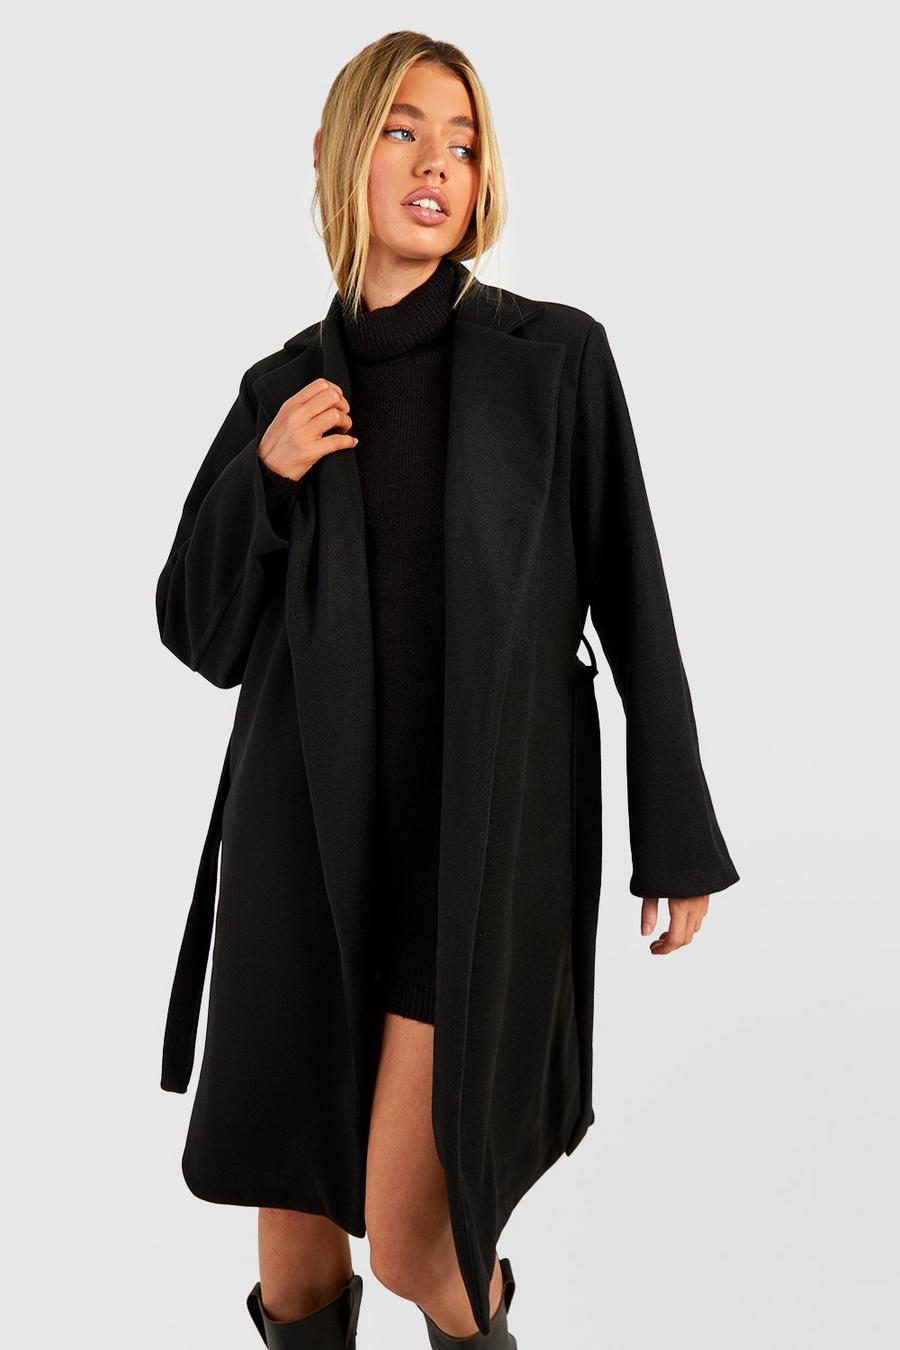 Mantel in Wolloptik mit Gürtel, Schwarz black